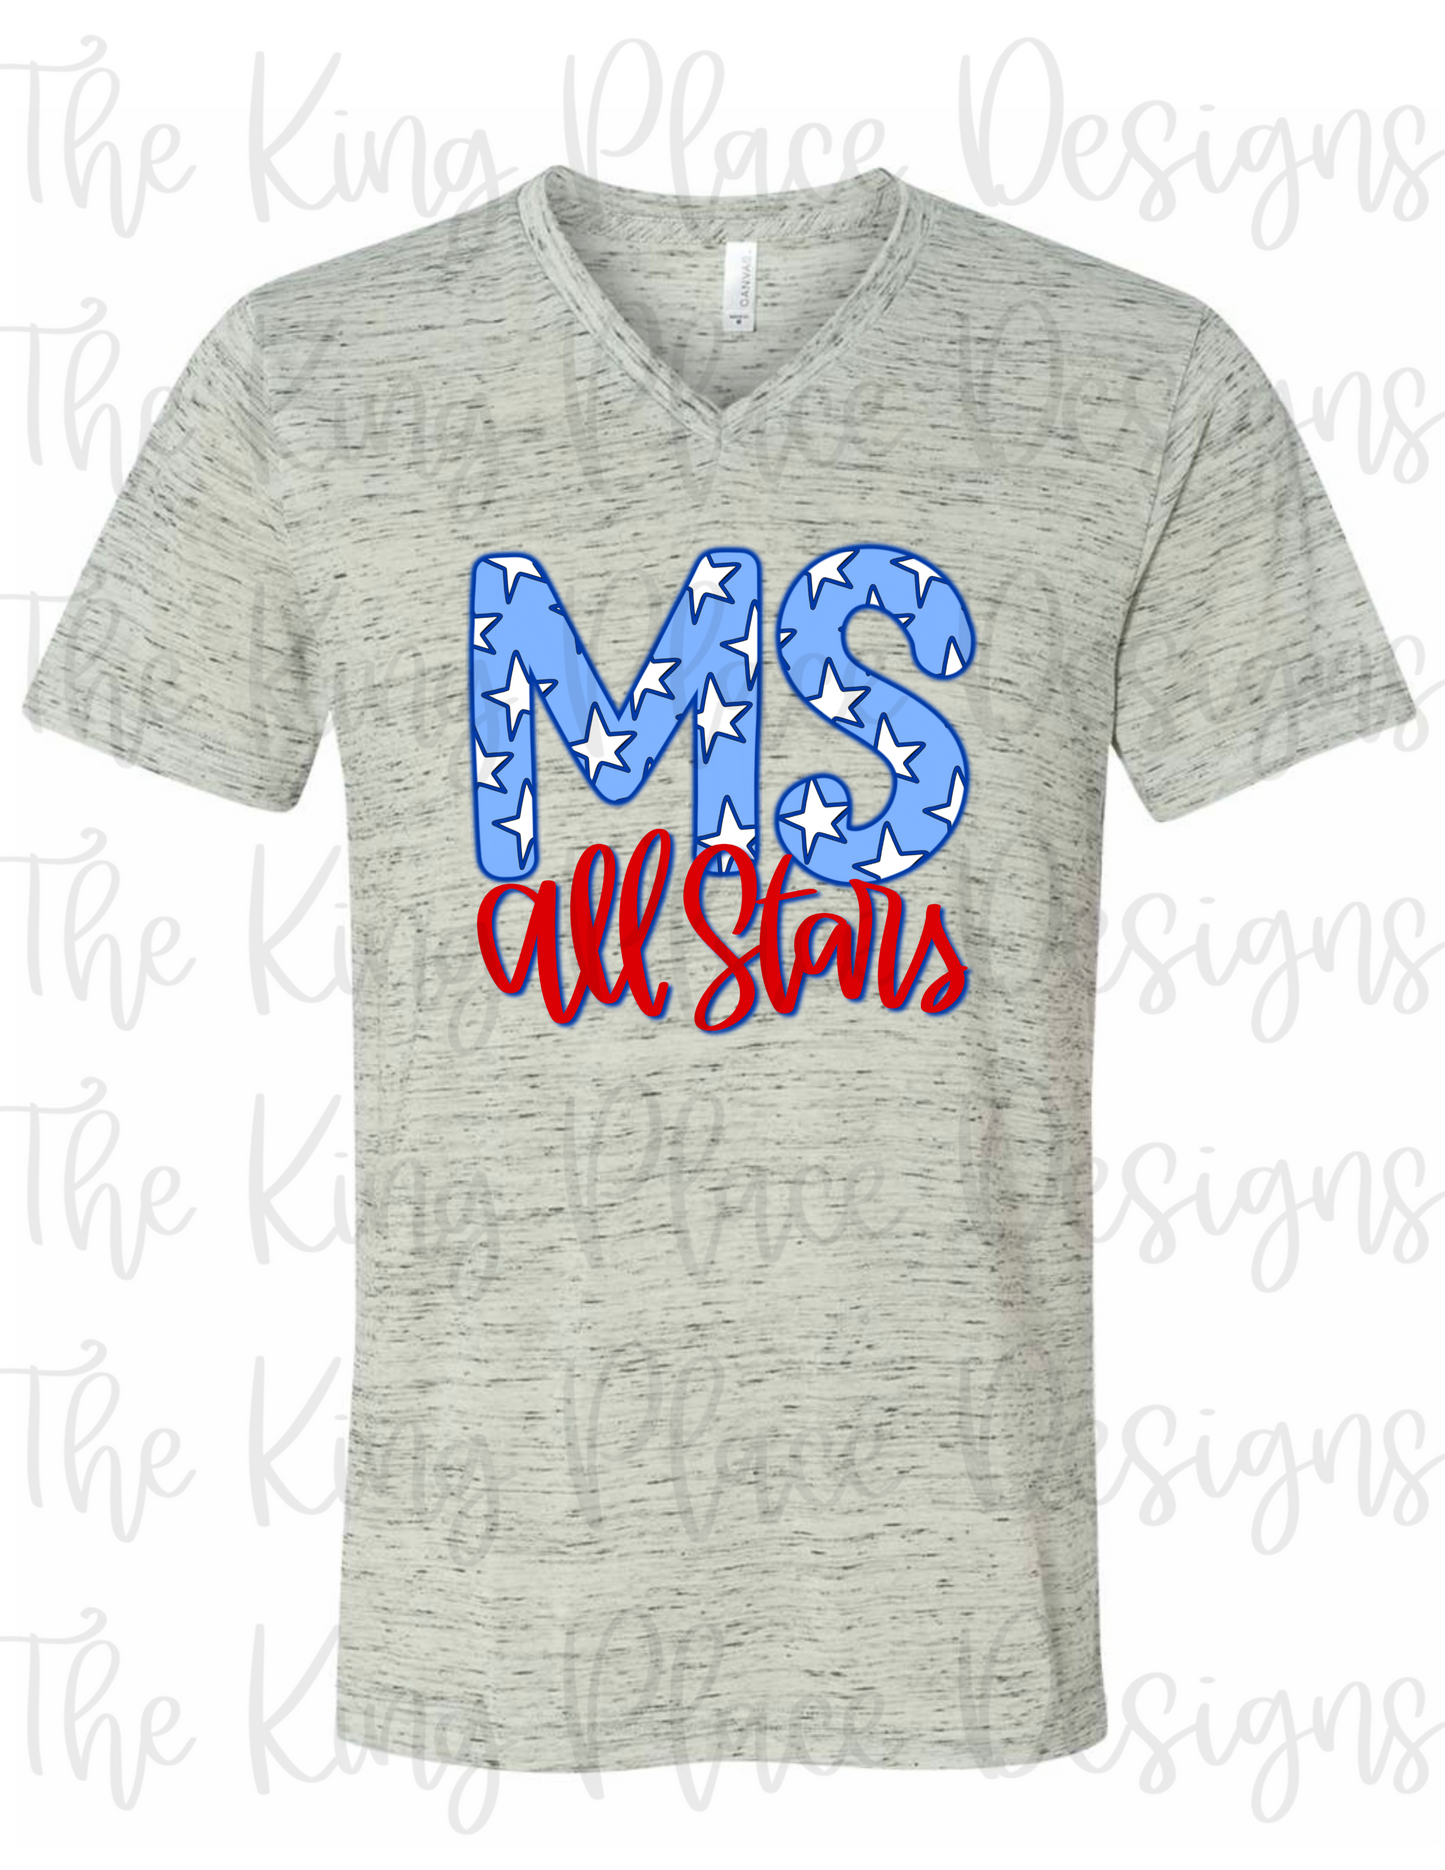 MS All Stars Tee/Tank